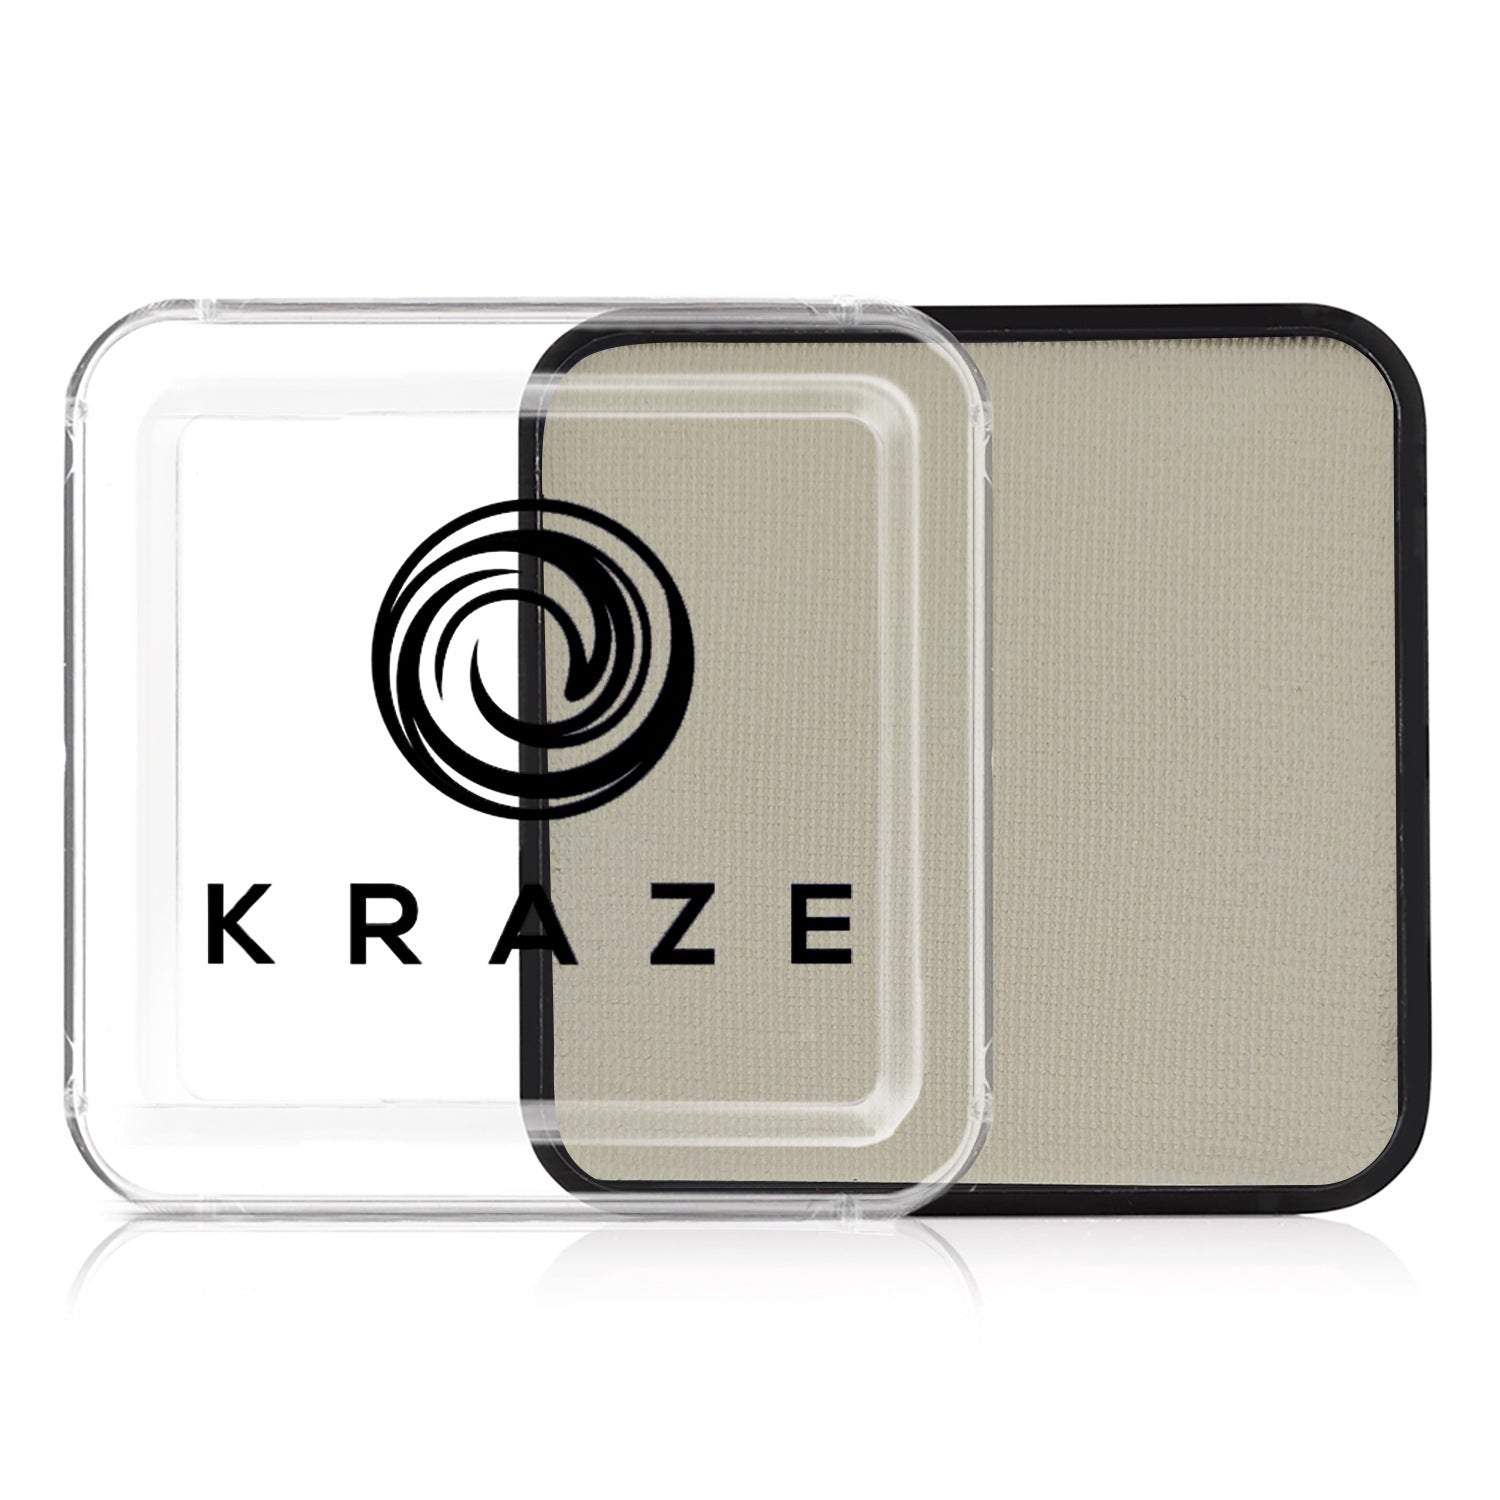 Kraze FX Square Paint - 25 gm - Neon White